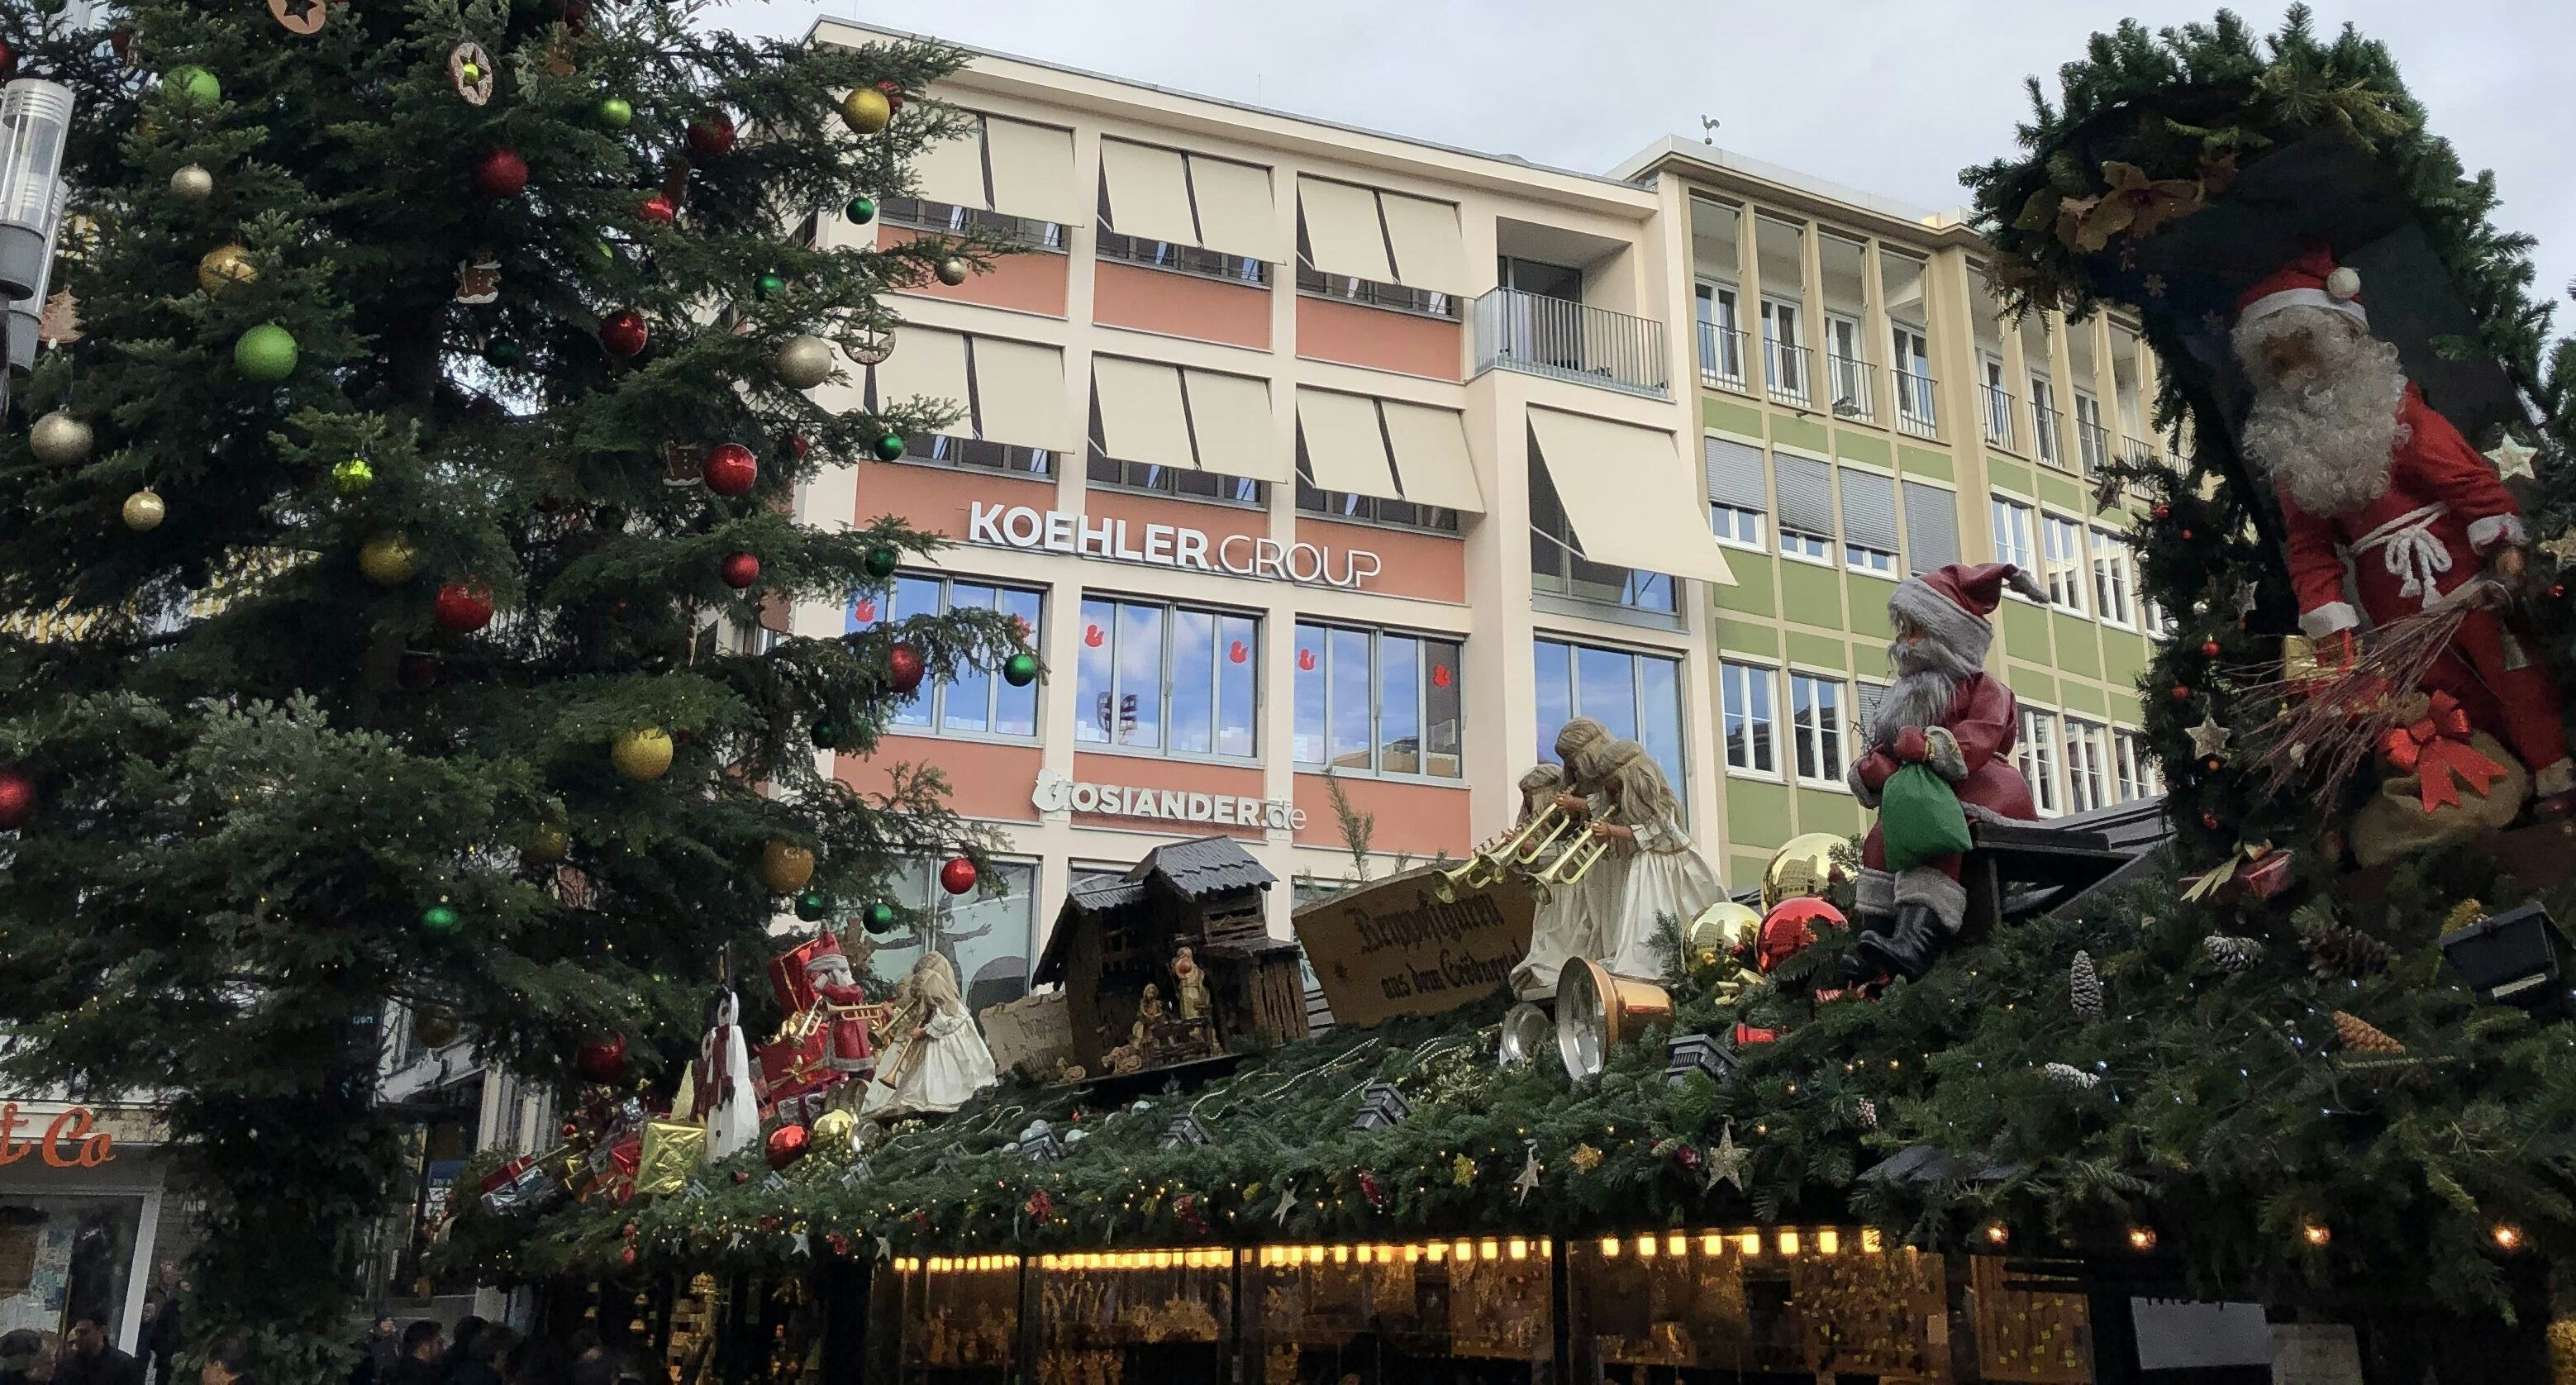 Stuttgart_Weihnachtsbaum